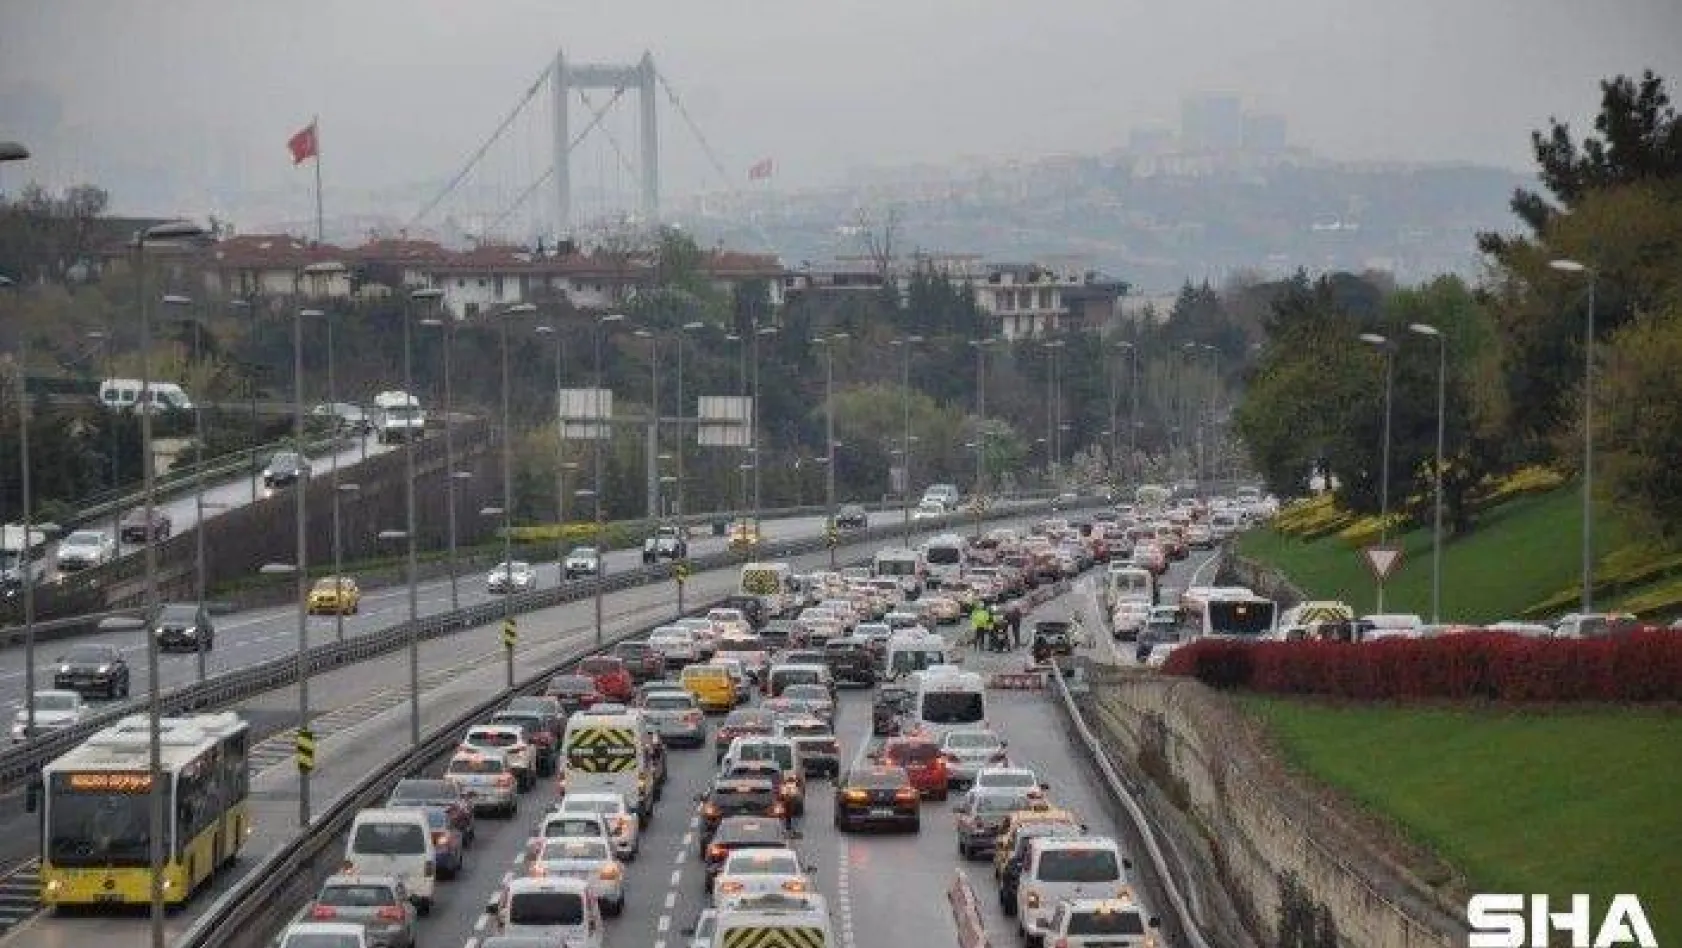 58 saatlik  kısıtlama sonrası İstanbul'da  trafik yoğunluğu